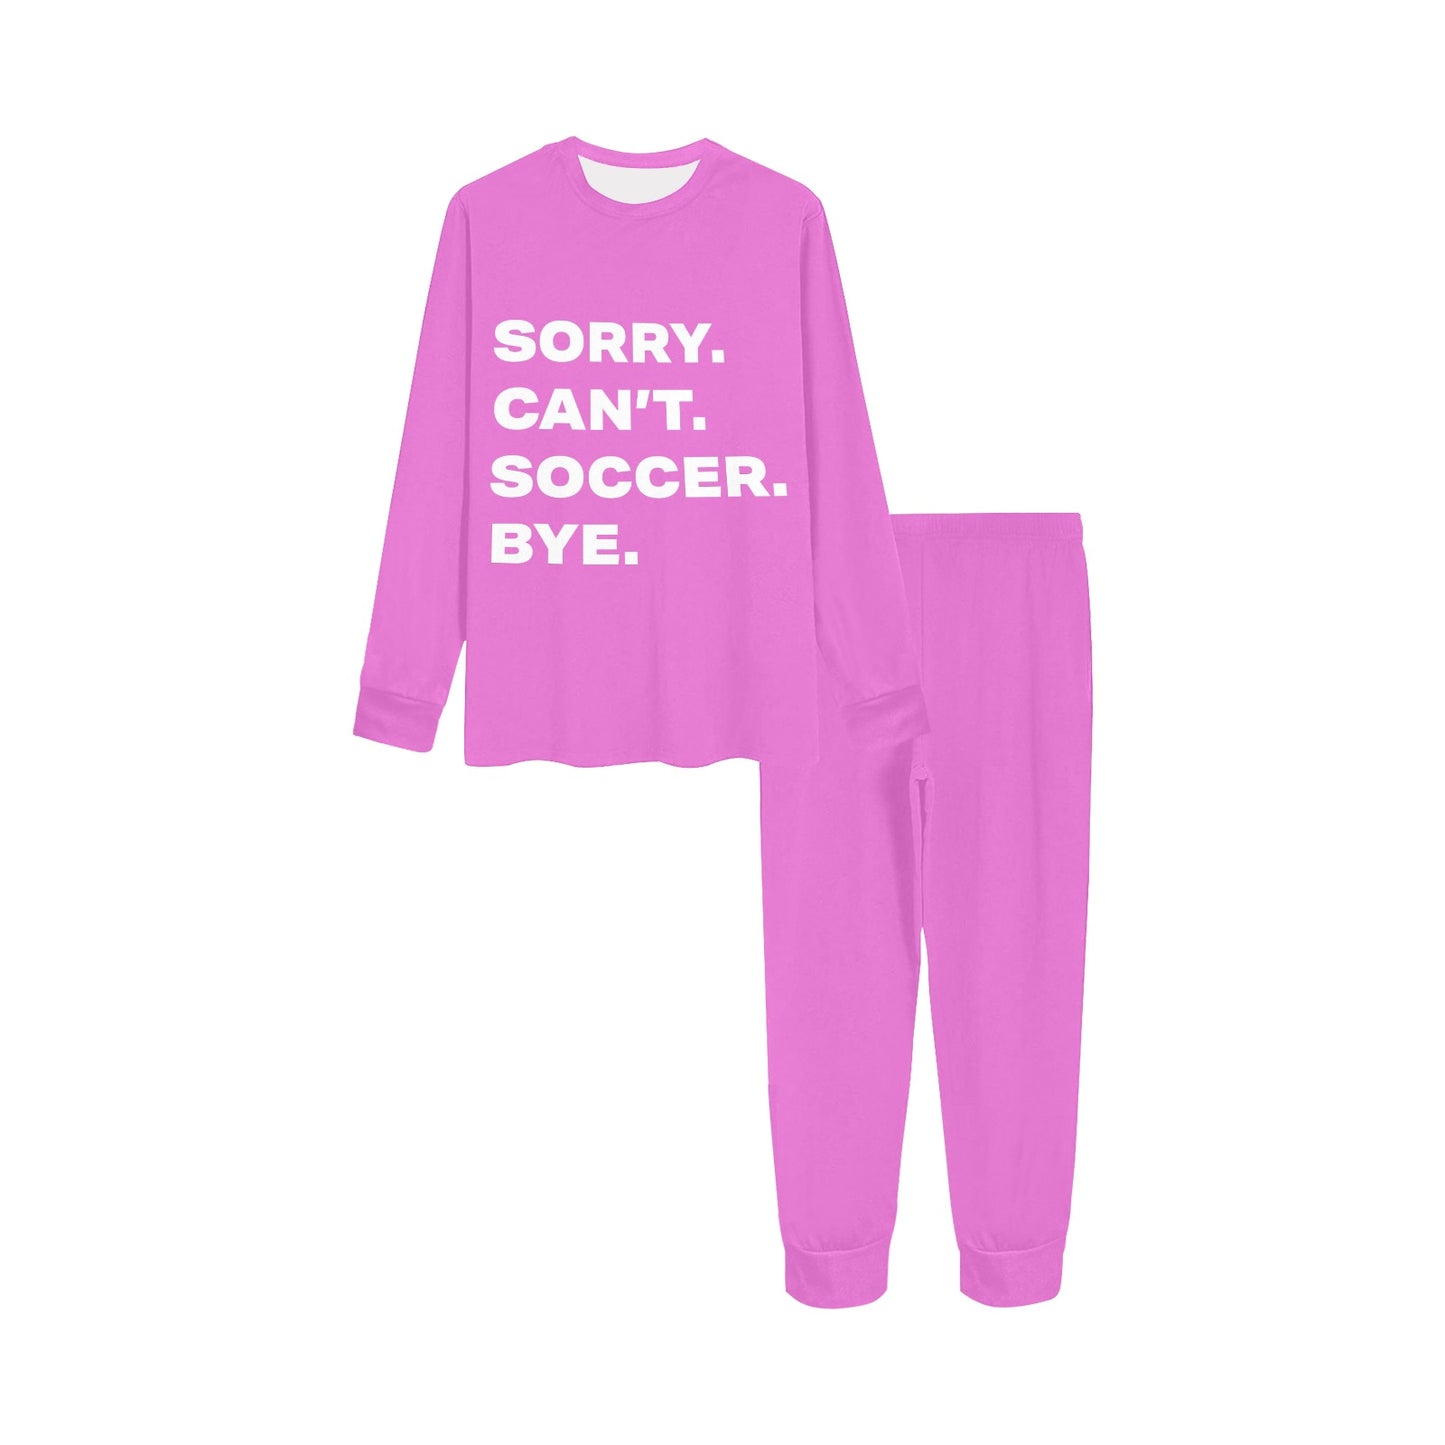 Kids Soccer Pajamas • For the Soccer-Obsessed Kid Always on the Go! • Girls Soccer PJs